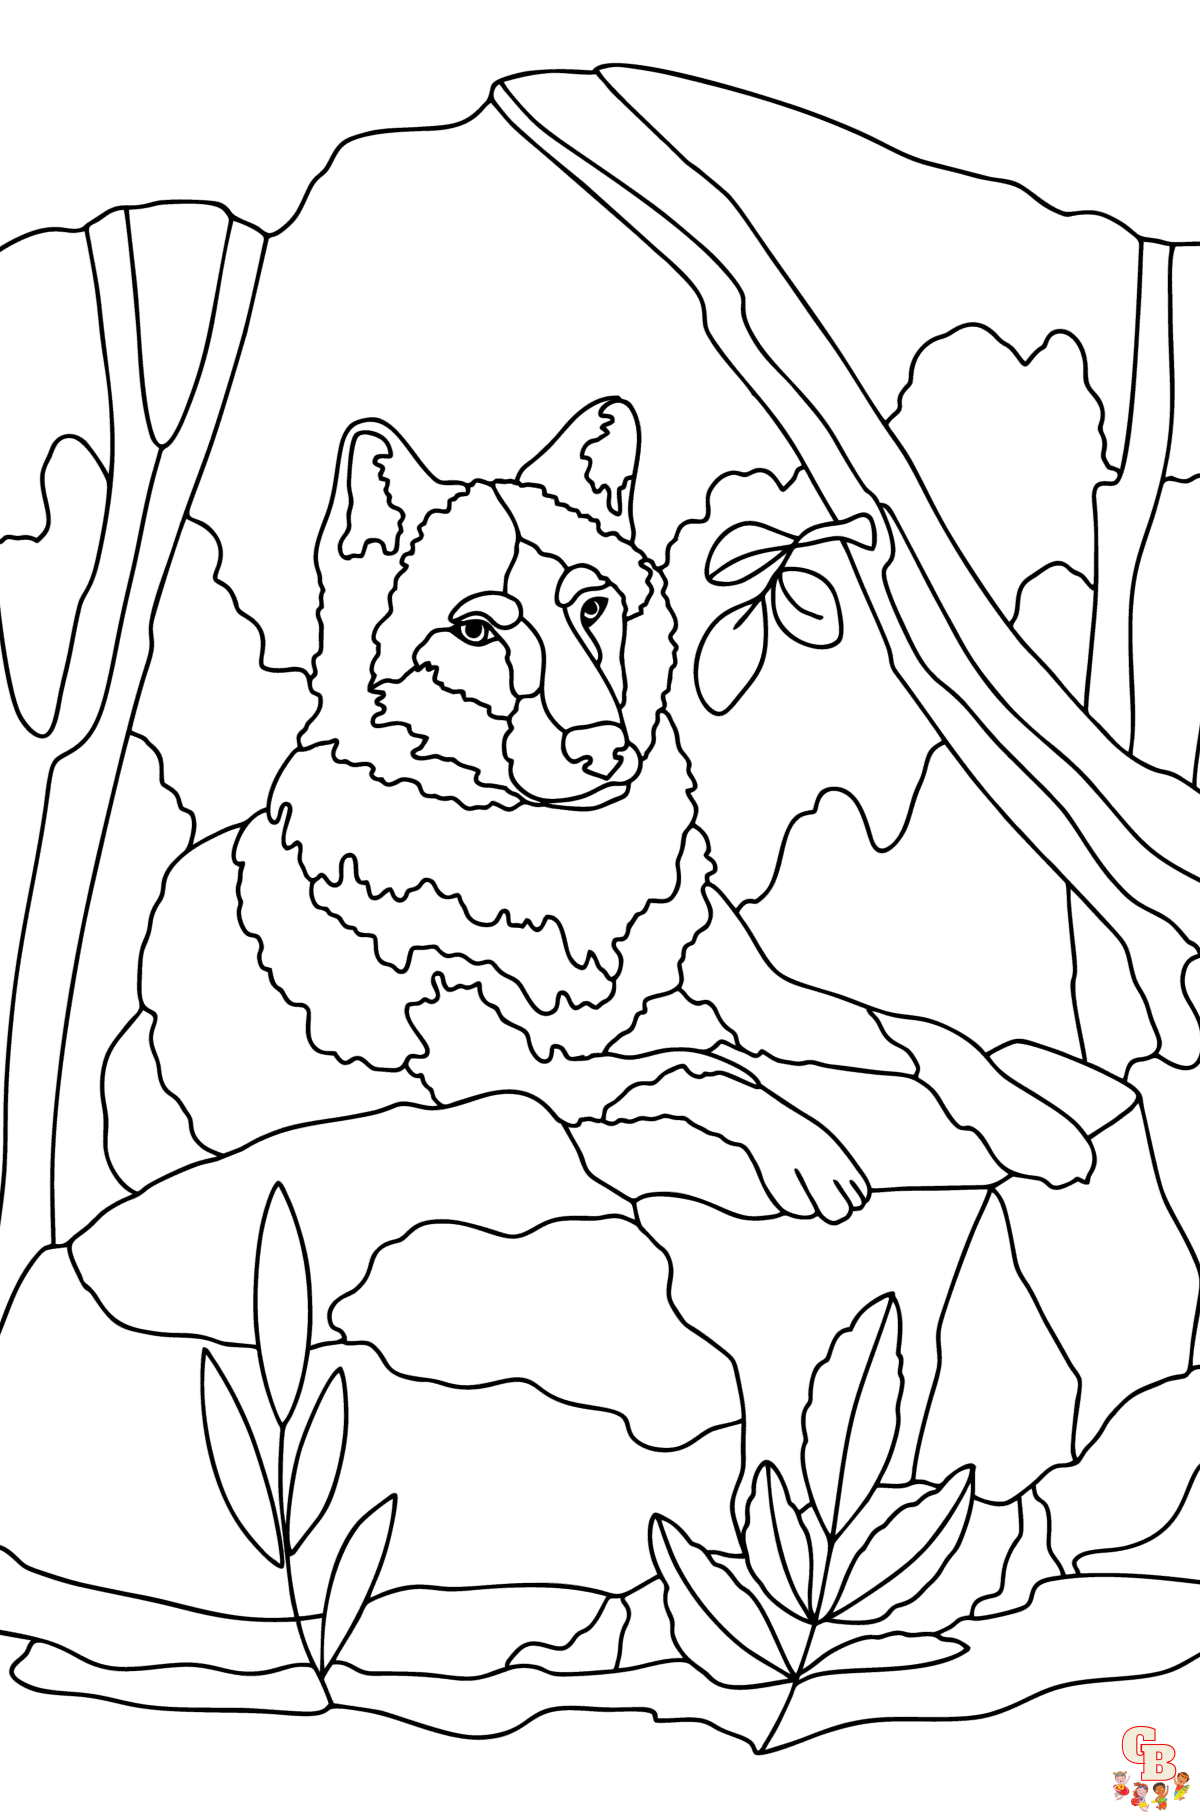 Coloriage loup pour enfants - Dessins de loups à colorier facilement